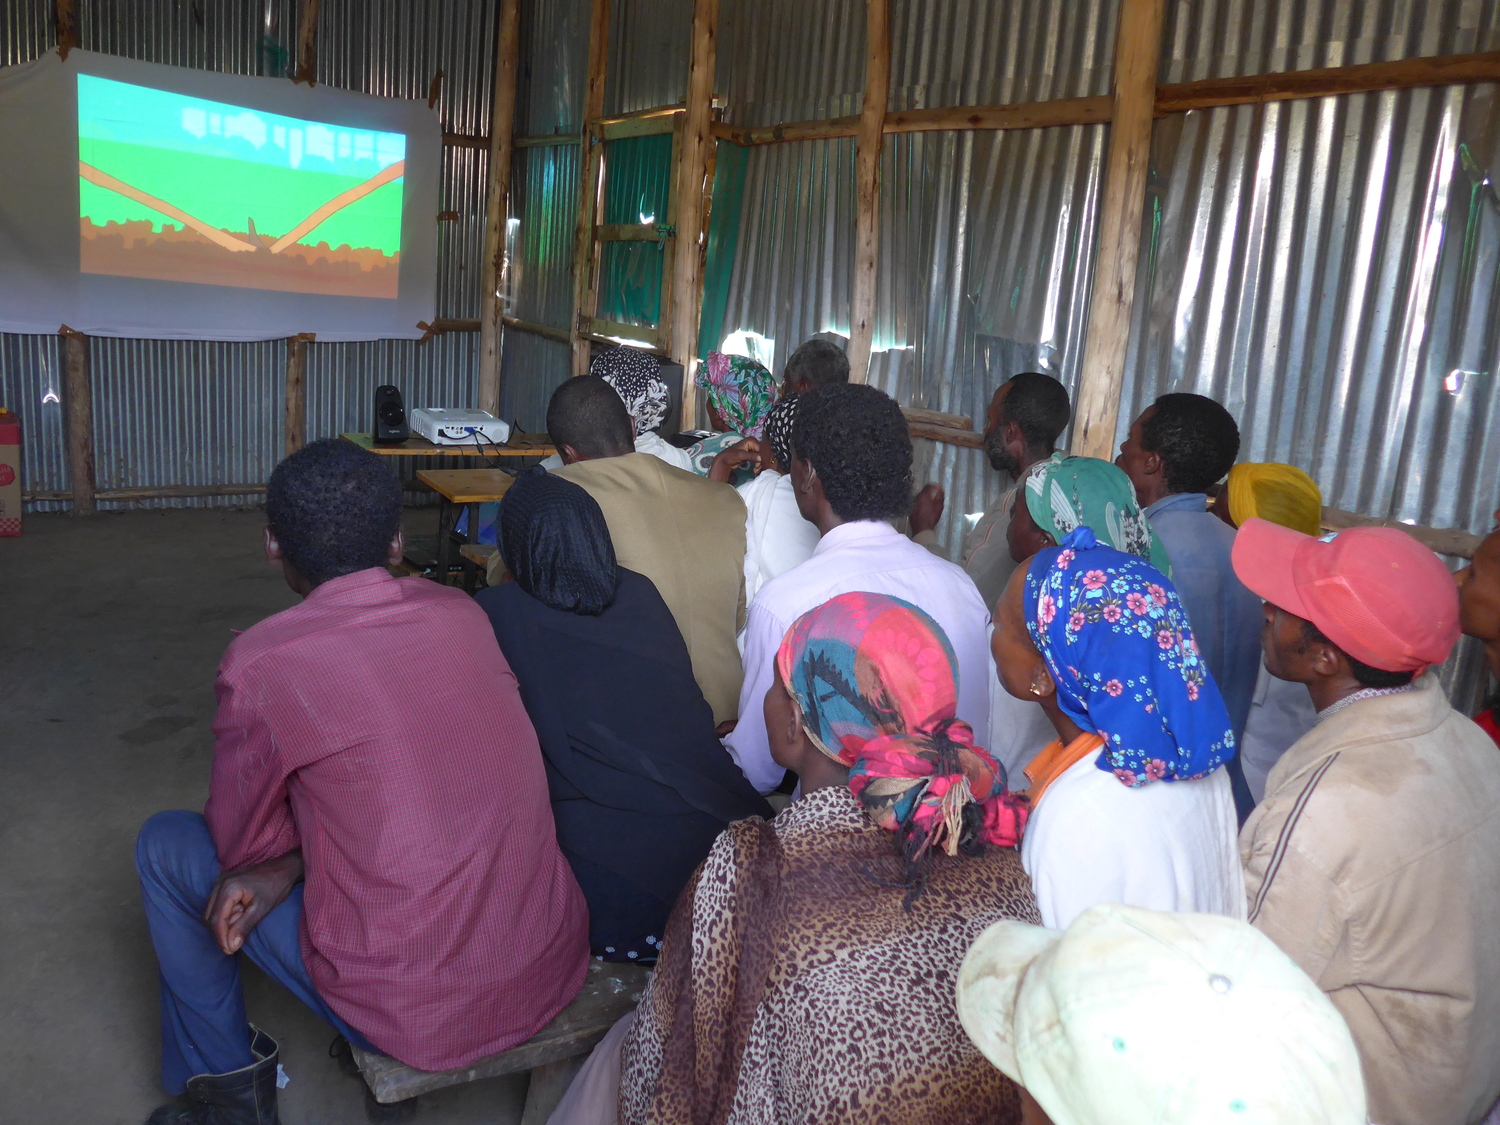 Landwirtinnen und Landwirte in Äthiopien schauen sich die Lernvideos zu landwirtschaftlichen Praktiken an.